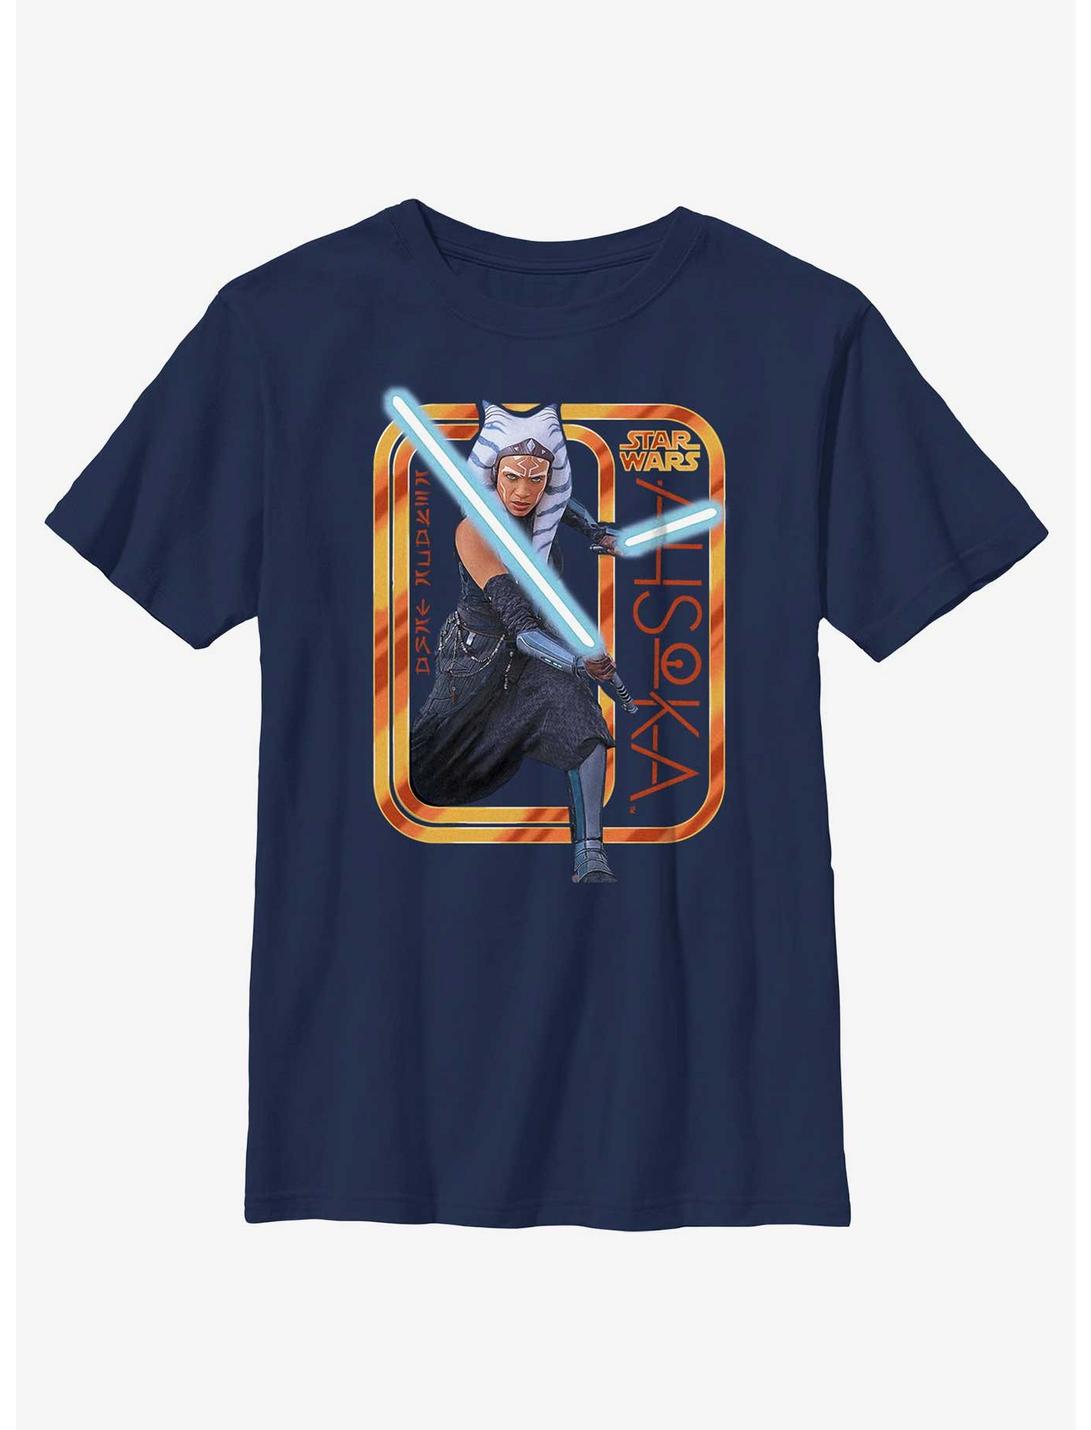 Star Wars Ahsoka Saber Badge Youth T-Shirt, NAVY, hi-res